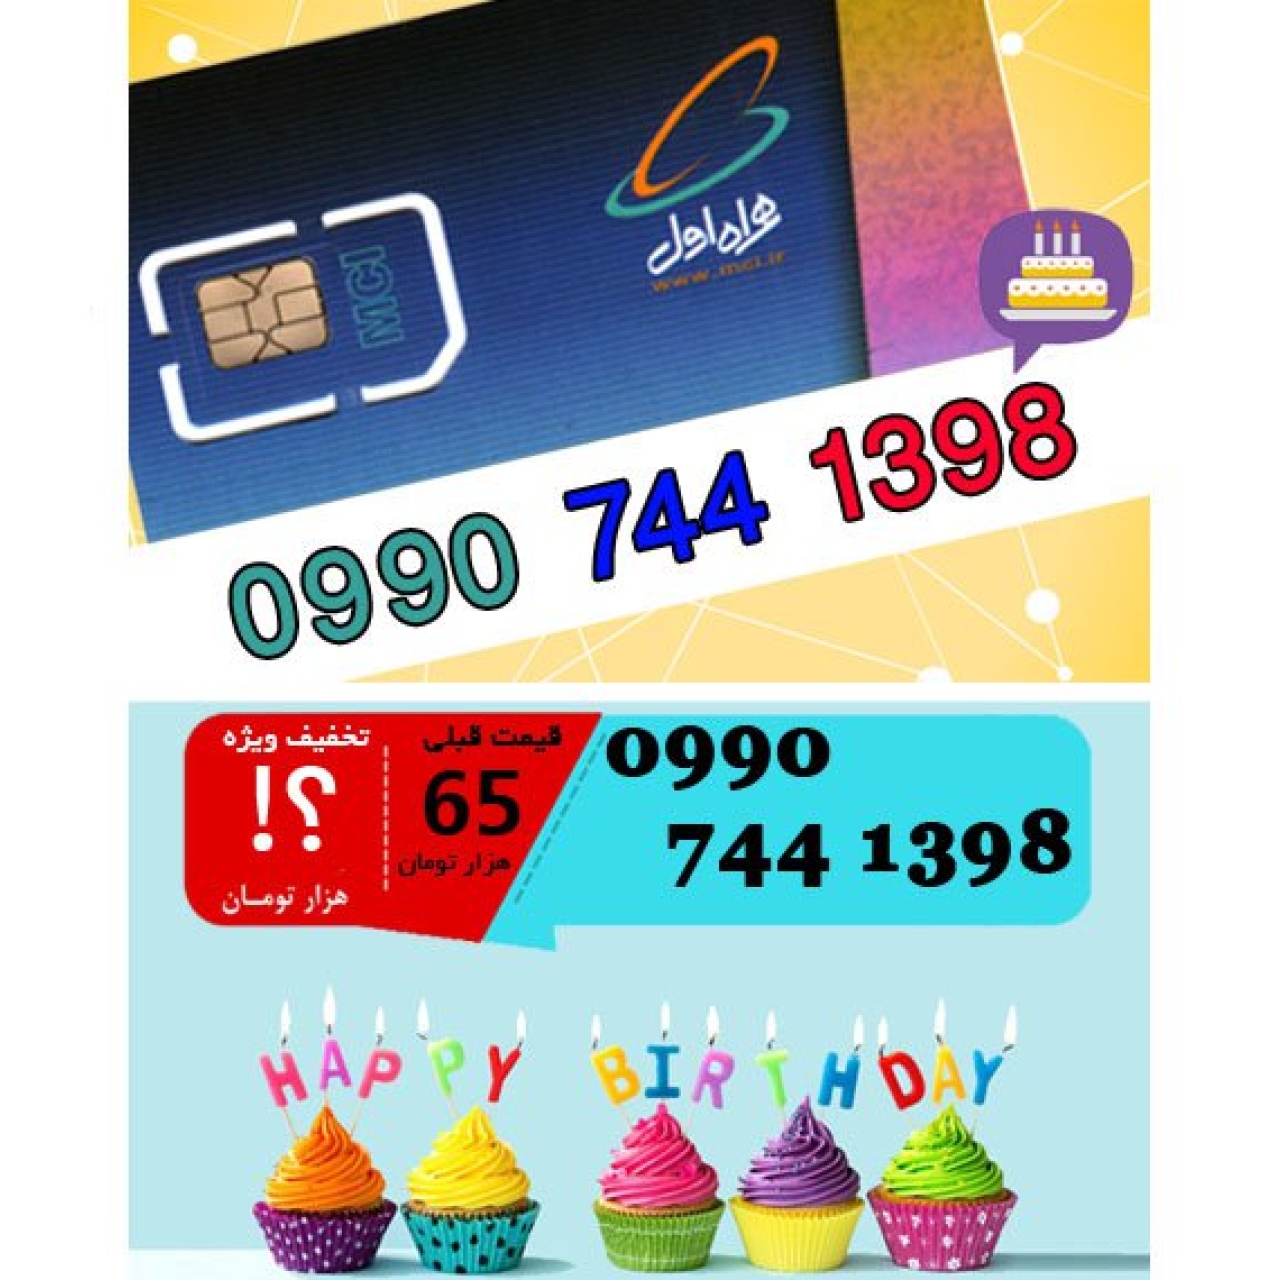 سیم کارت اعتباری همراه اول 09907441398 تاریخ تولد